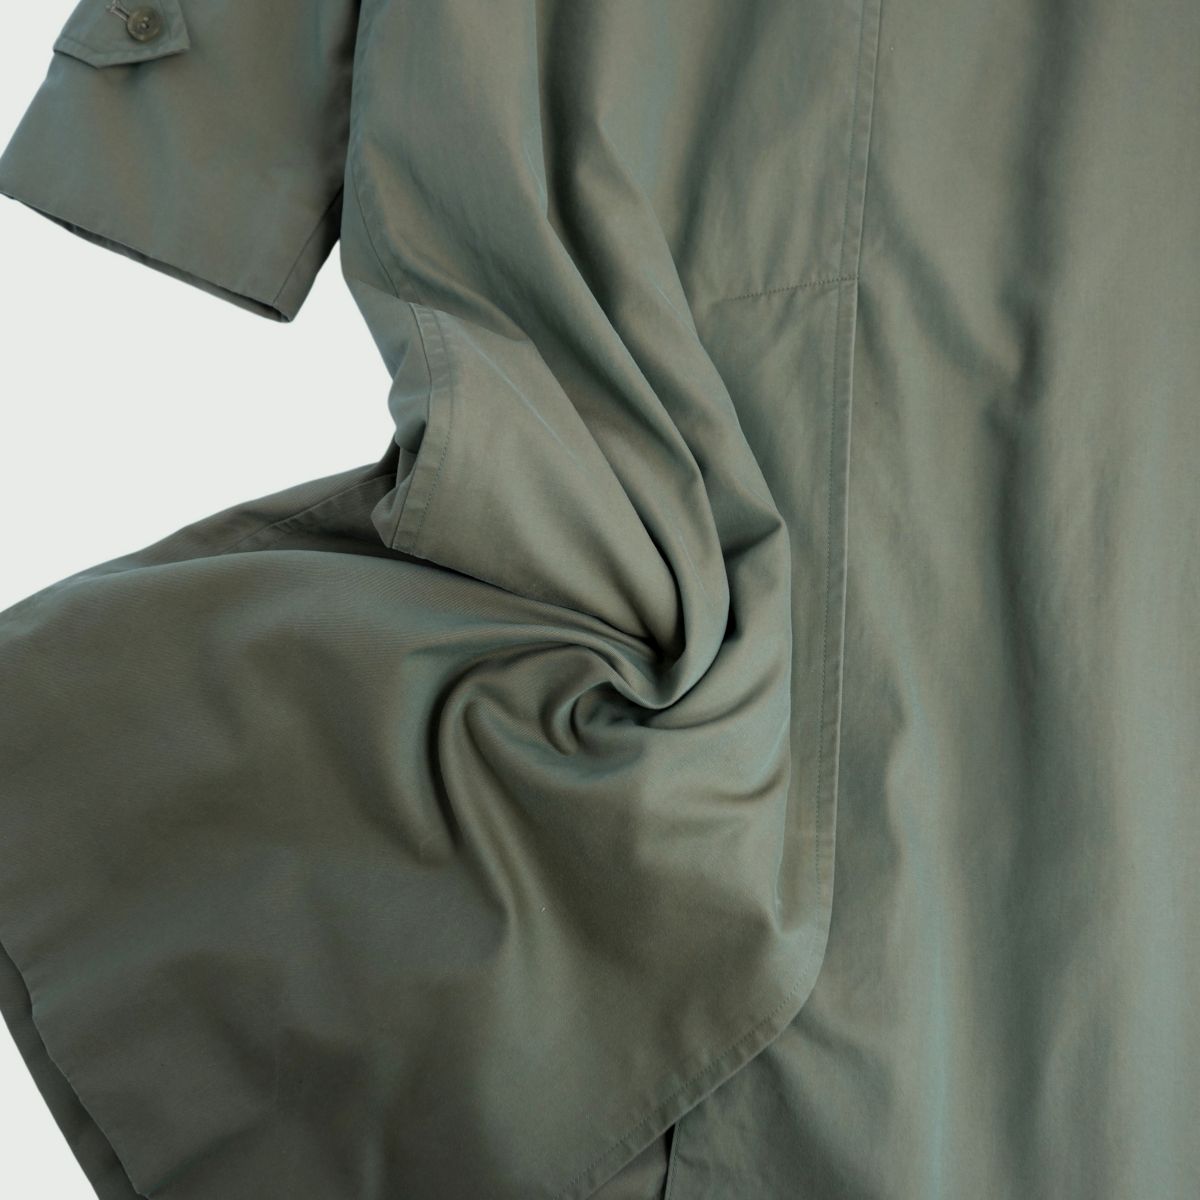 Vint Burberry s Coat  Coat Balmacorn Coat Back Check Out   Liner 7AB2 (S equivalent) Olive Coat  BODEST